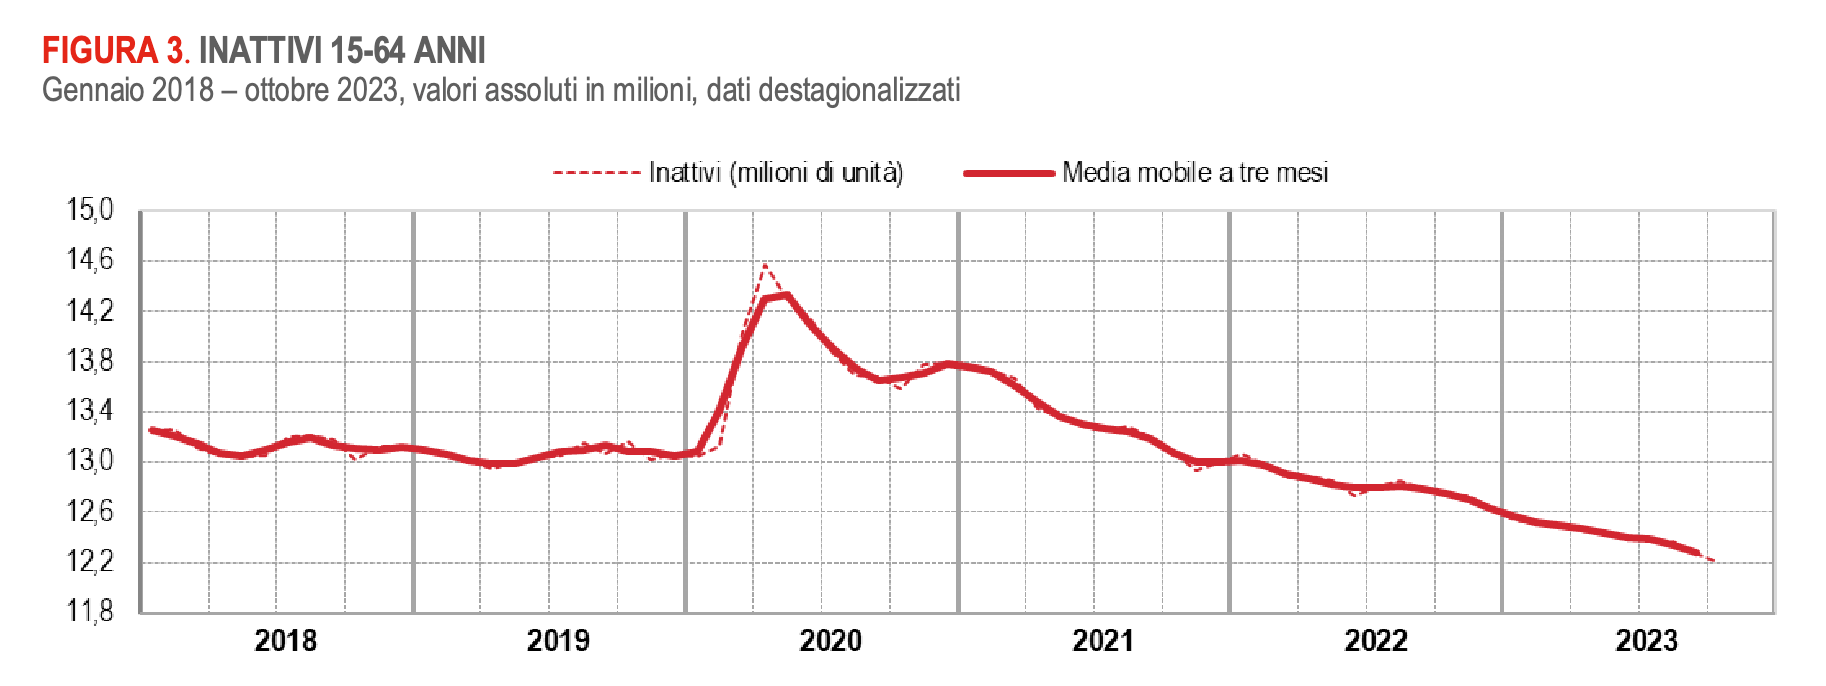 Occupazione e disoccupazione in Italia nel 2023